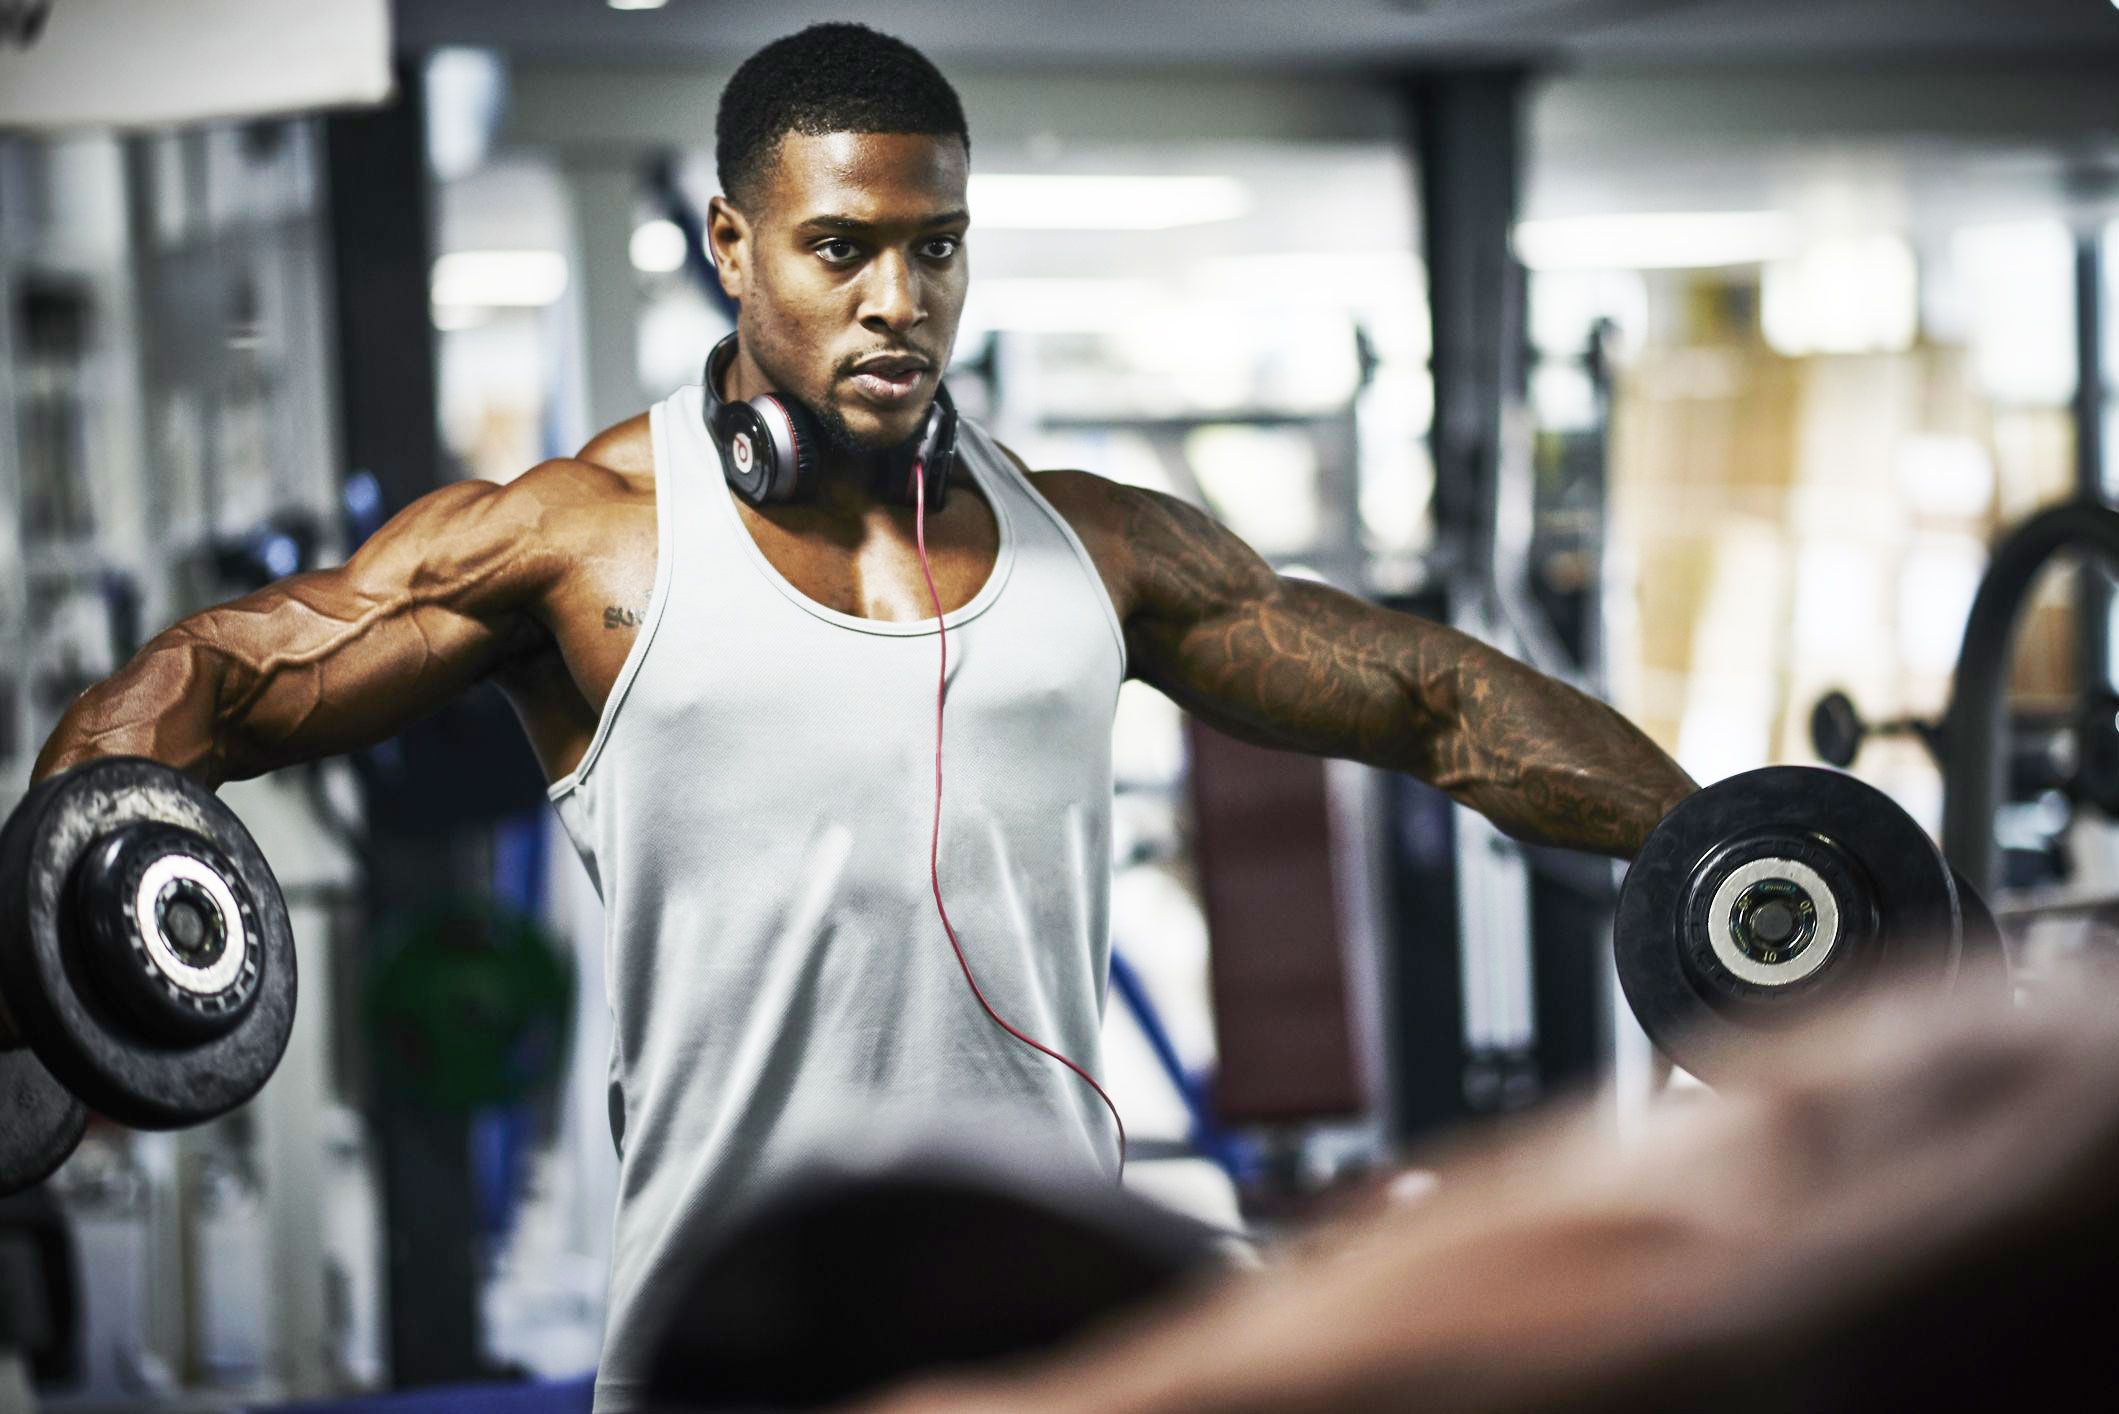 Gym Rats Fit – Get Fit, Don't Quit!